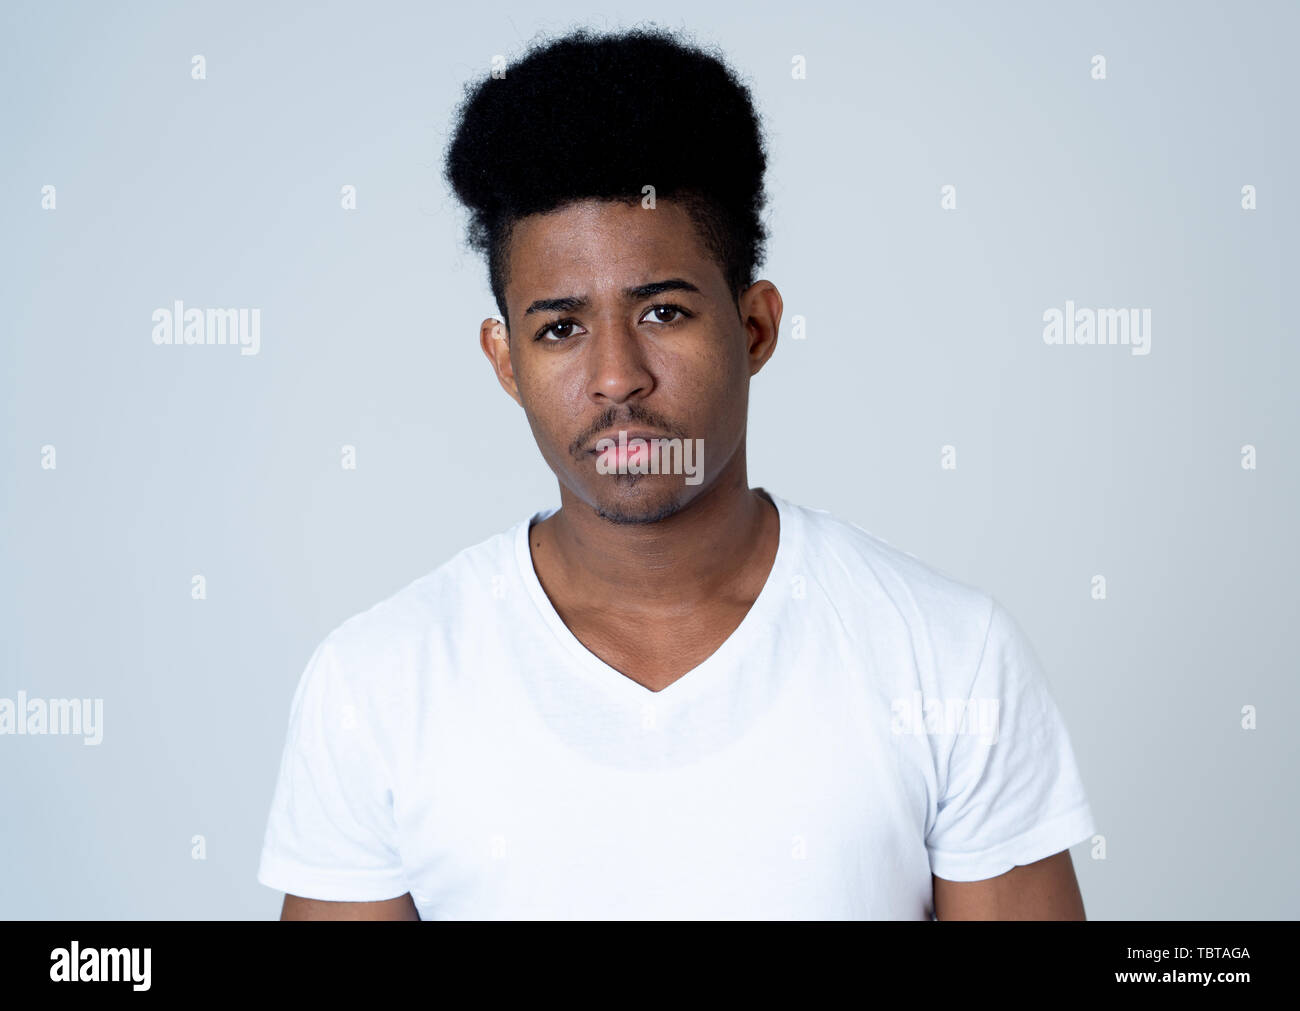 Porträt eines attraktiven jungen afrikanischen amerikanischen Mann mit Verärgerten Gesicht. Teenager wütend und crazy Suchen in einen Streit oder Kampf. In den Menschen, die menschliche Stockfoto